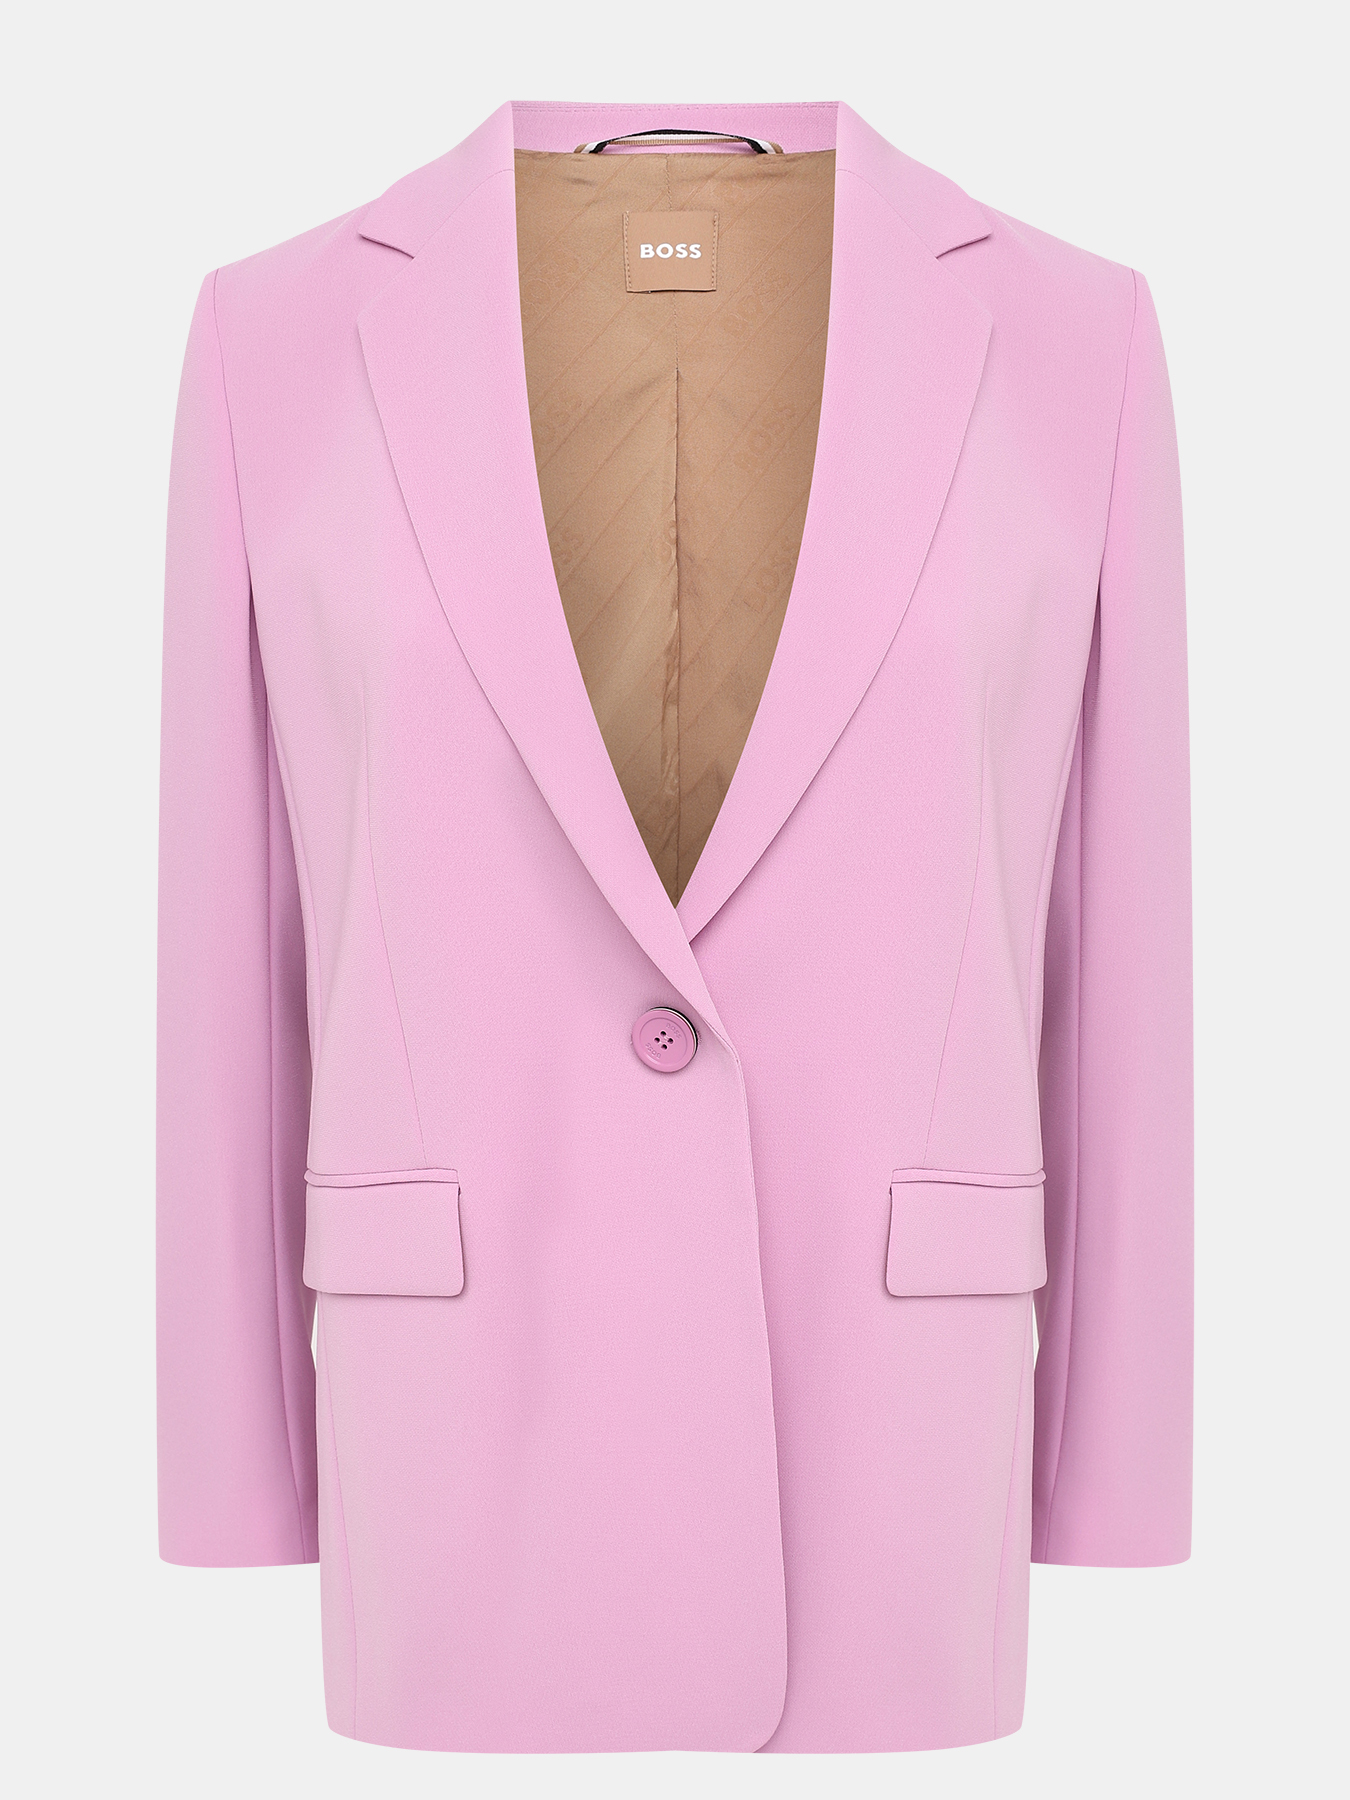 Пиджак Jocalua BOSS 434141-018, цвет розовый, размер 42